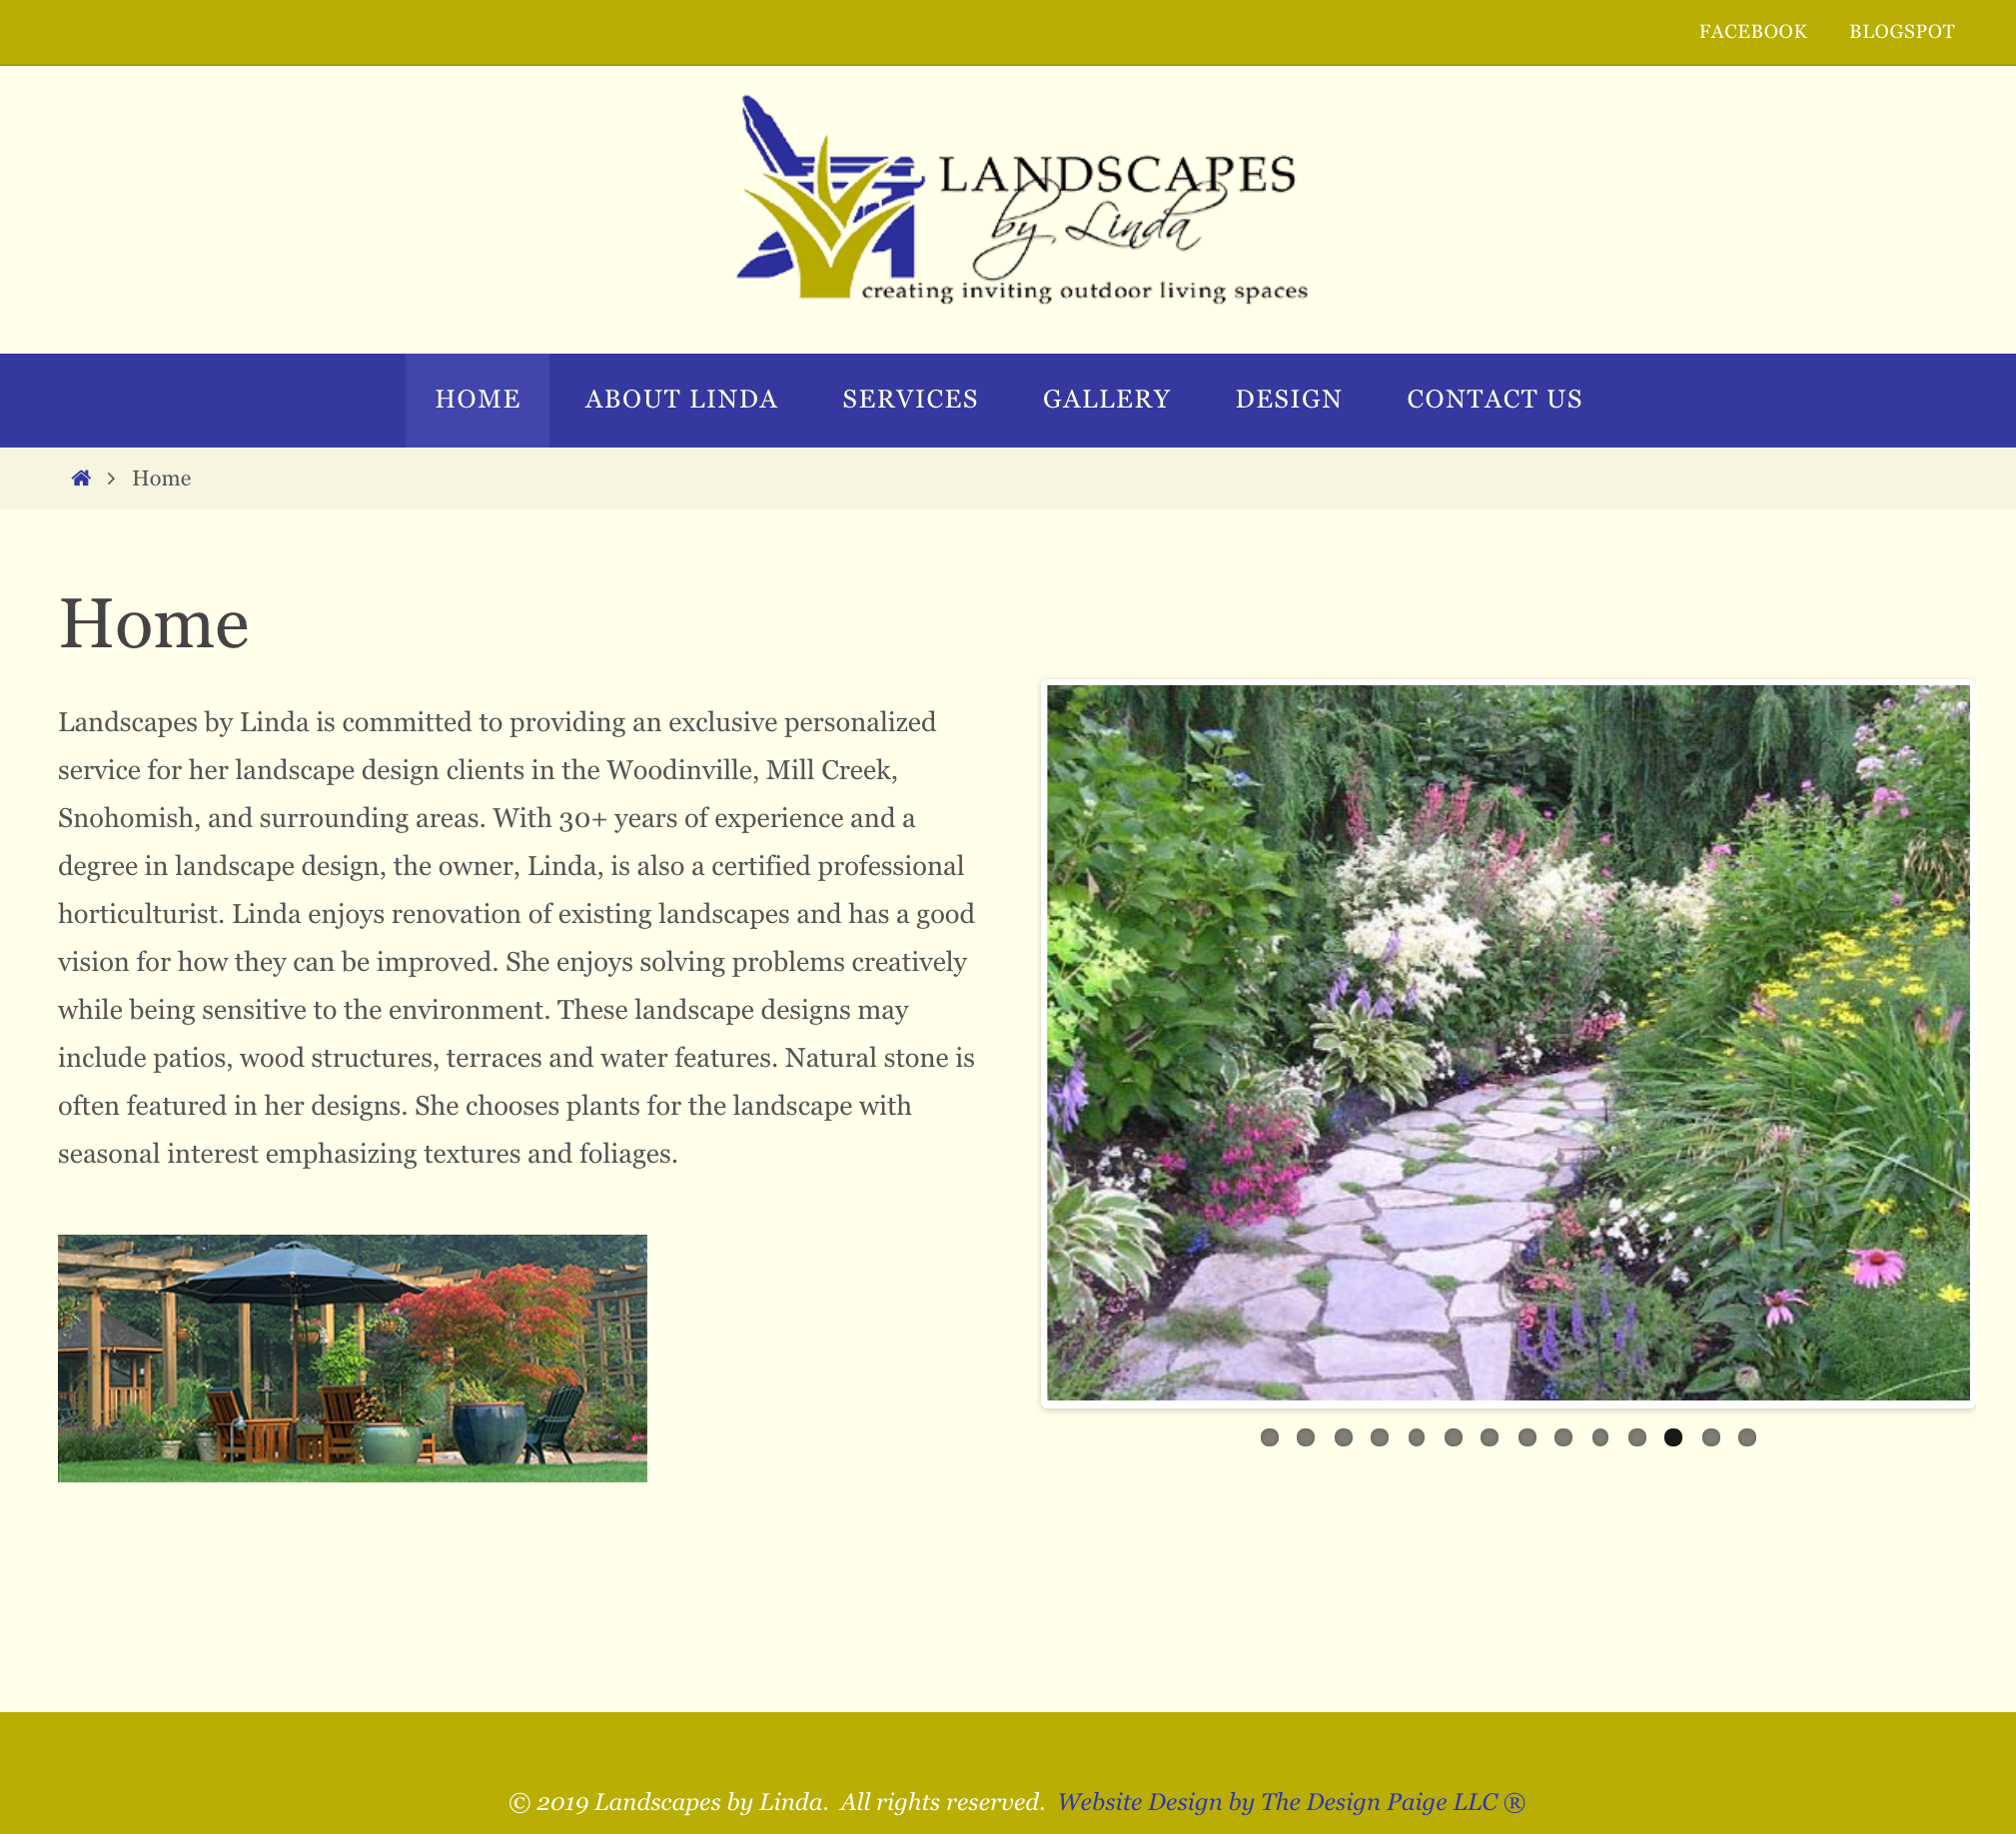 Landscapes by Linda website